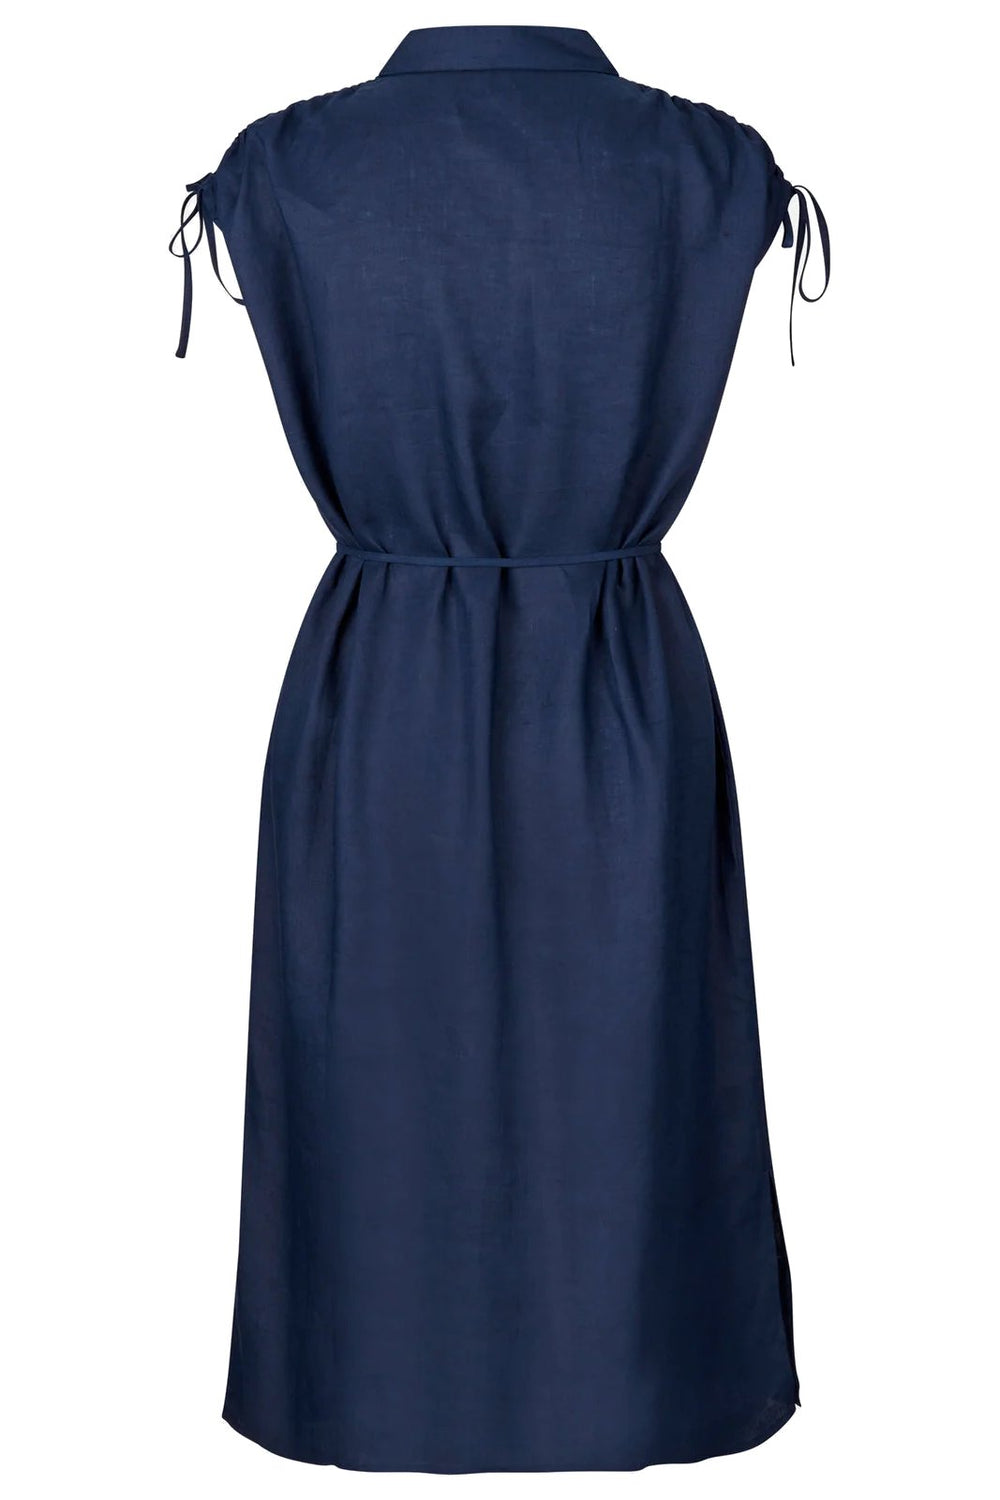 Rosemunde | Skjortekjole | Linen Shirt Dress, navy